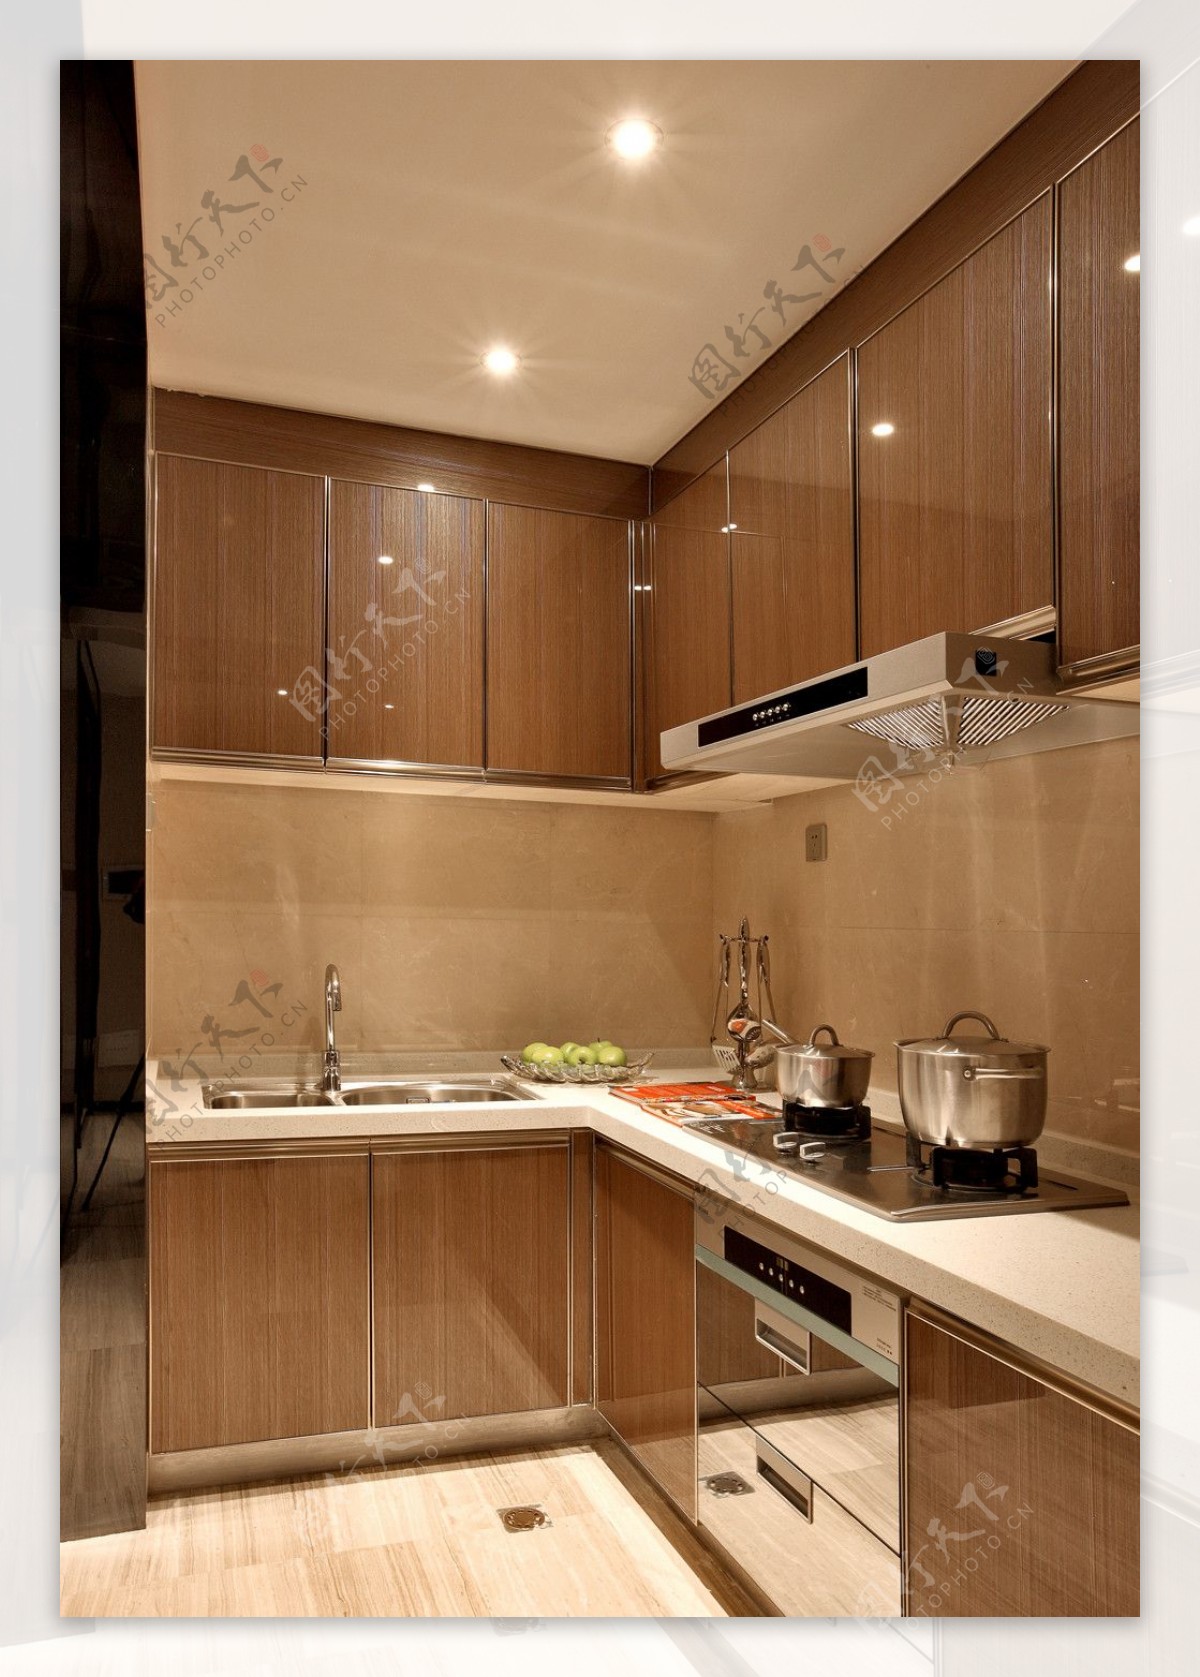 简约欧式风室内设计厨房效果图